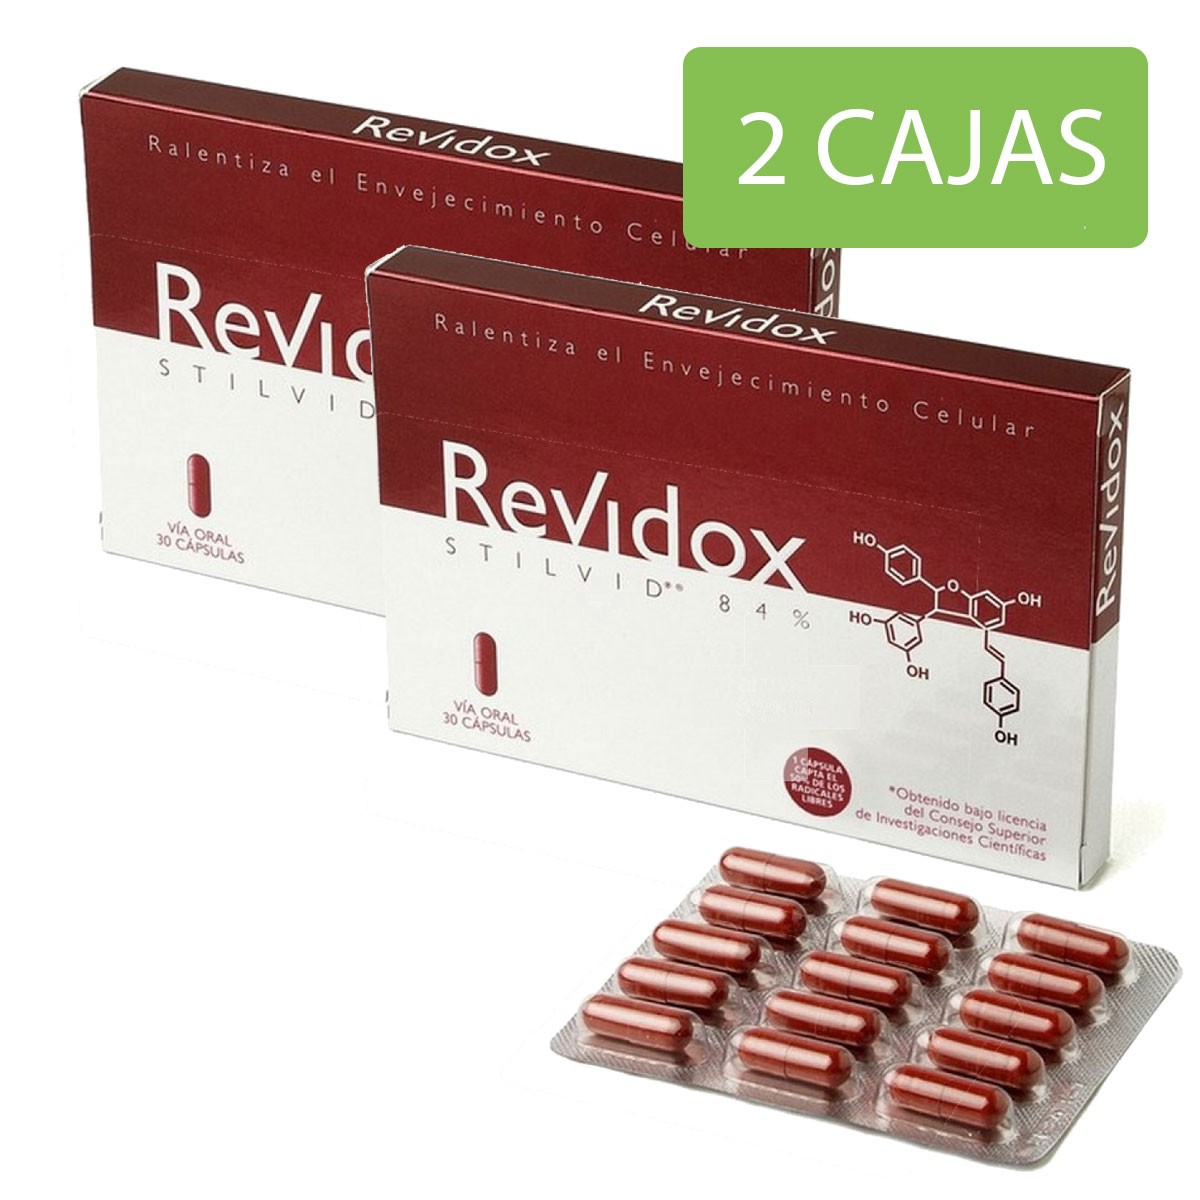 Revidox 30 cápsulas Promoción ahorro 2 cajas